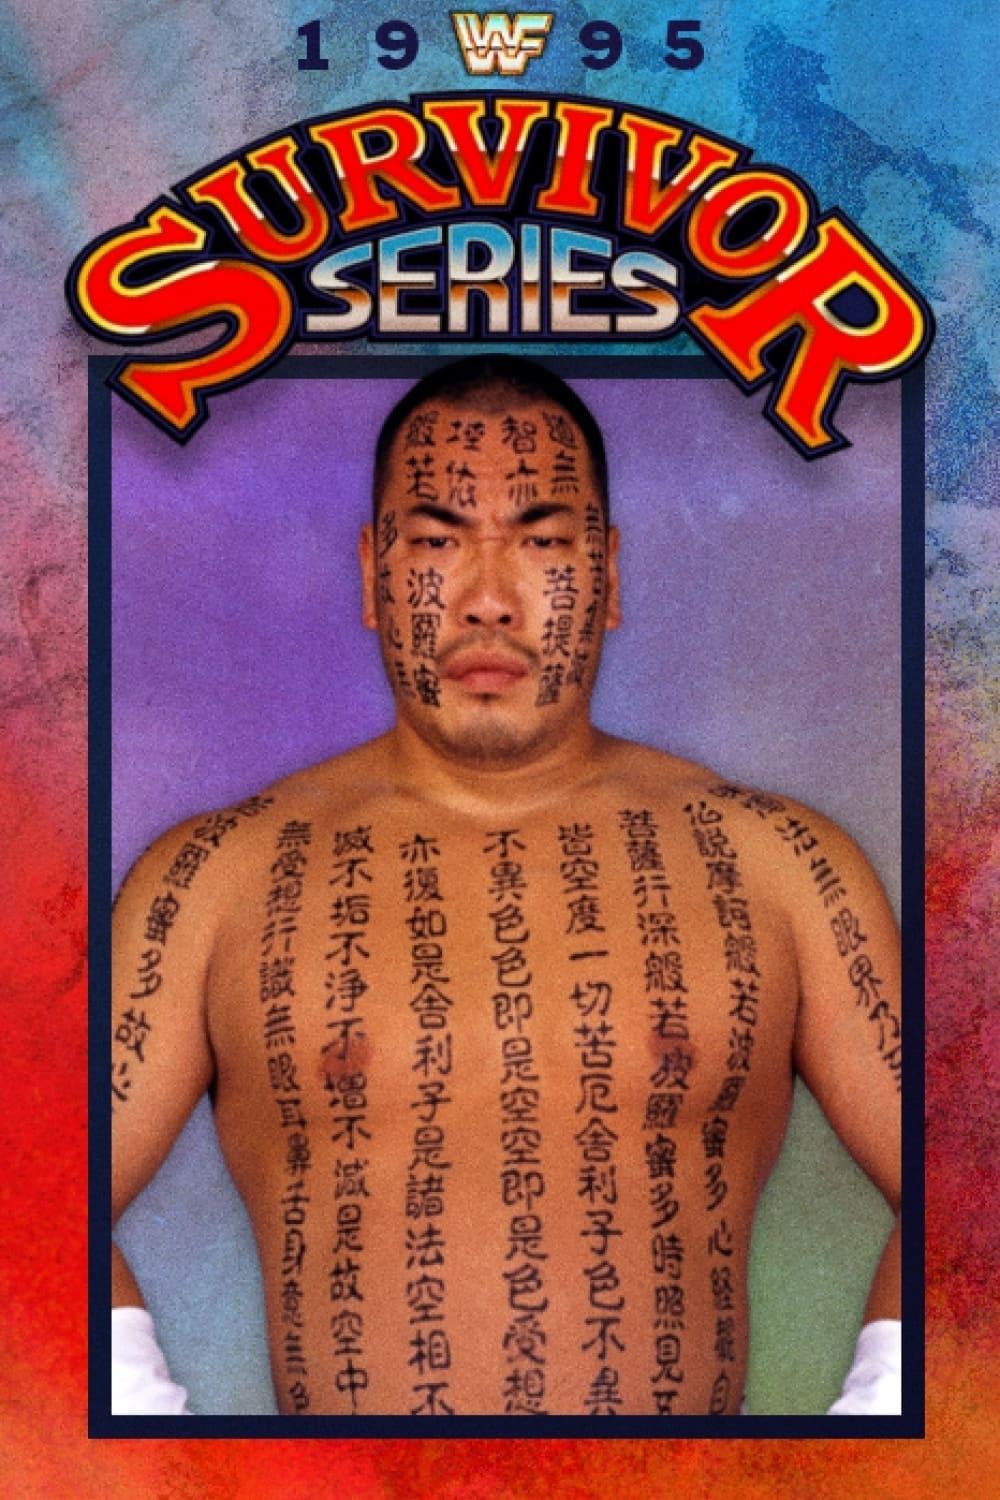 WWE Survivor Series 1995 poster